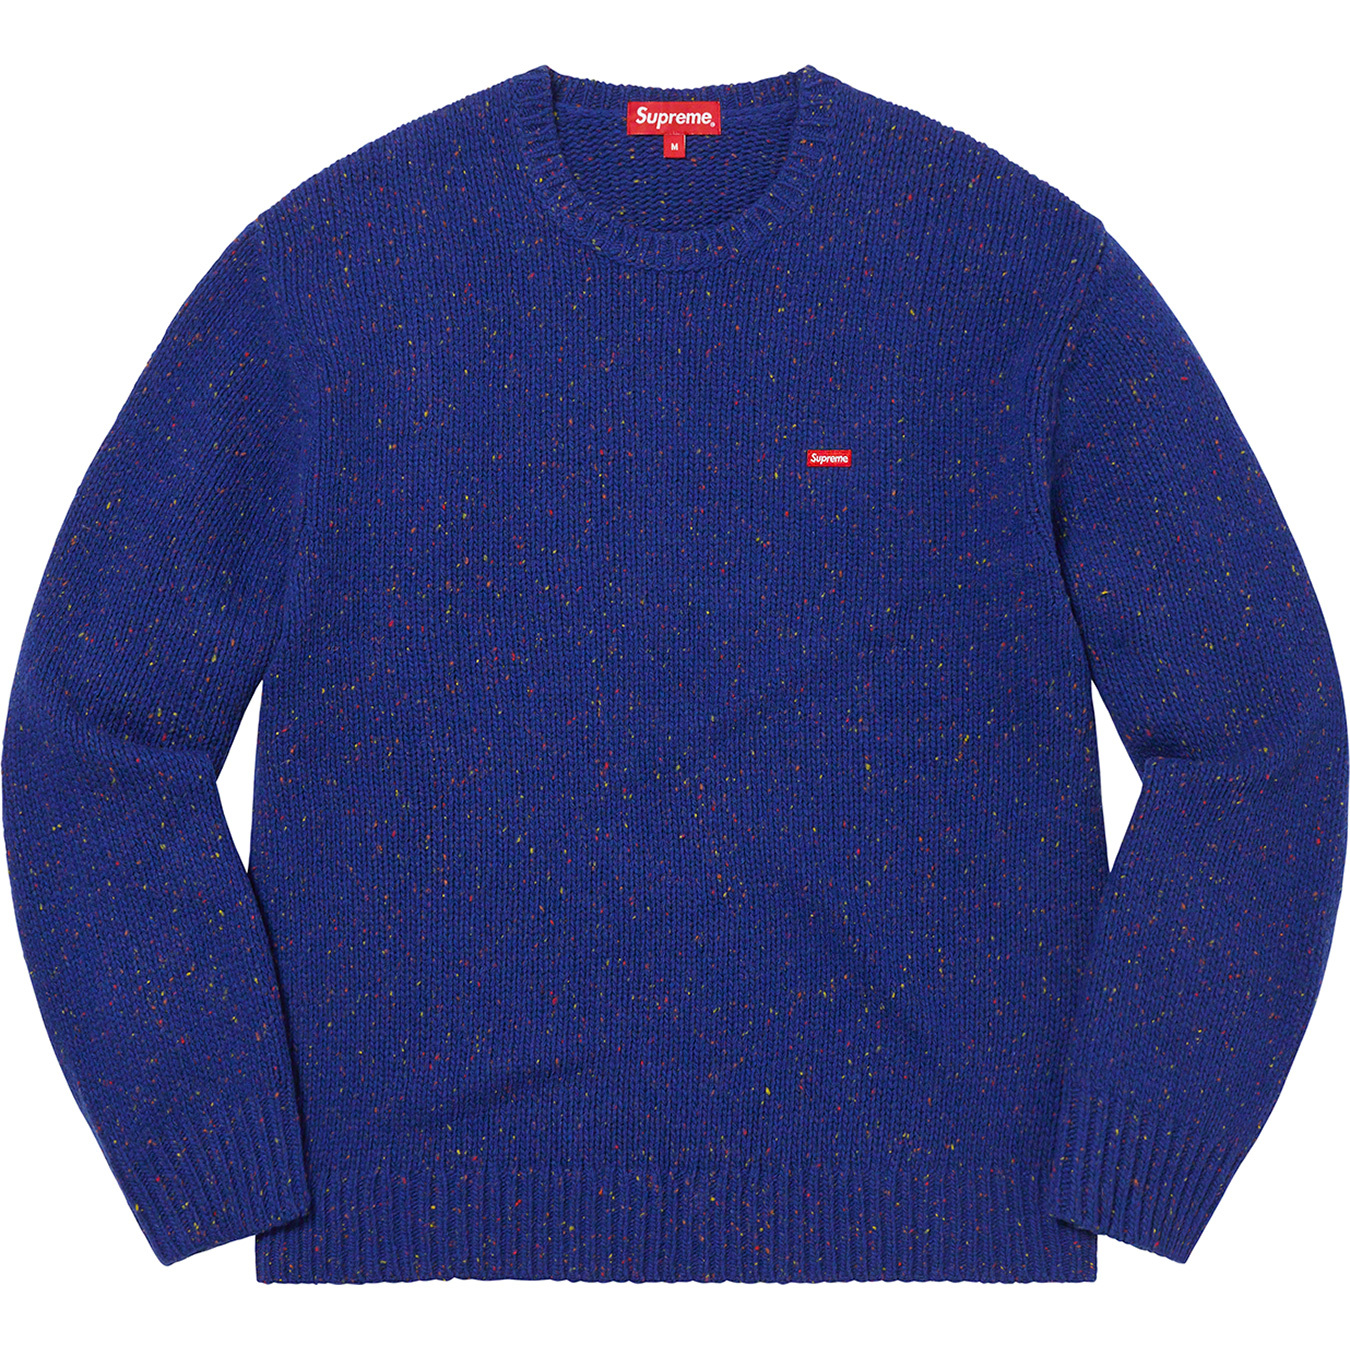 Supreme Small Box Speckle Sweater